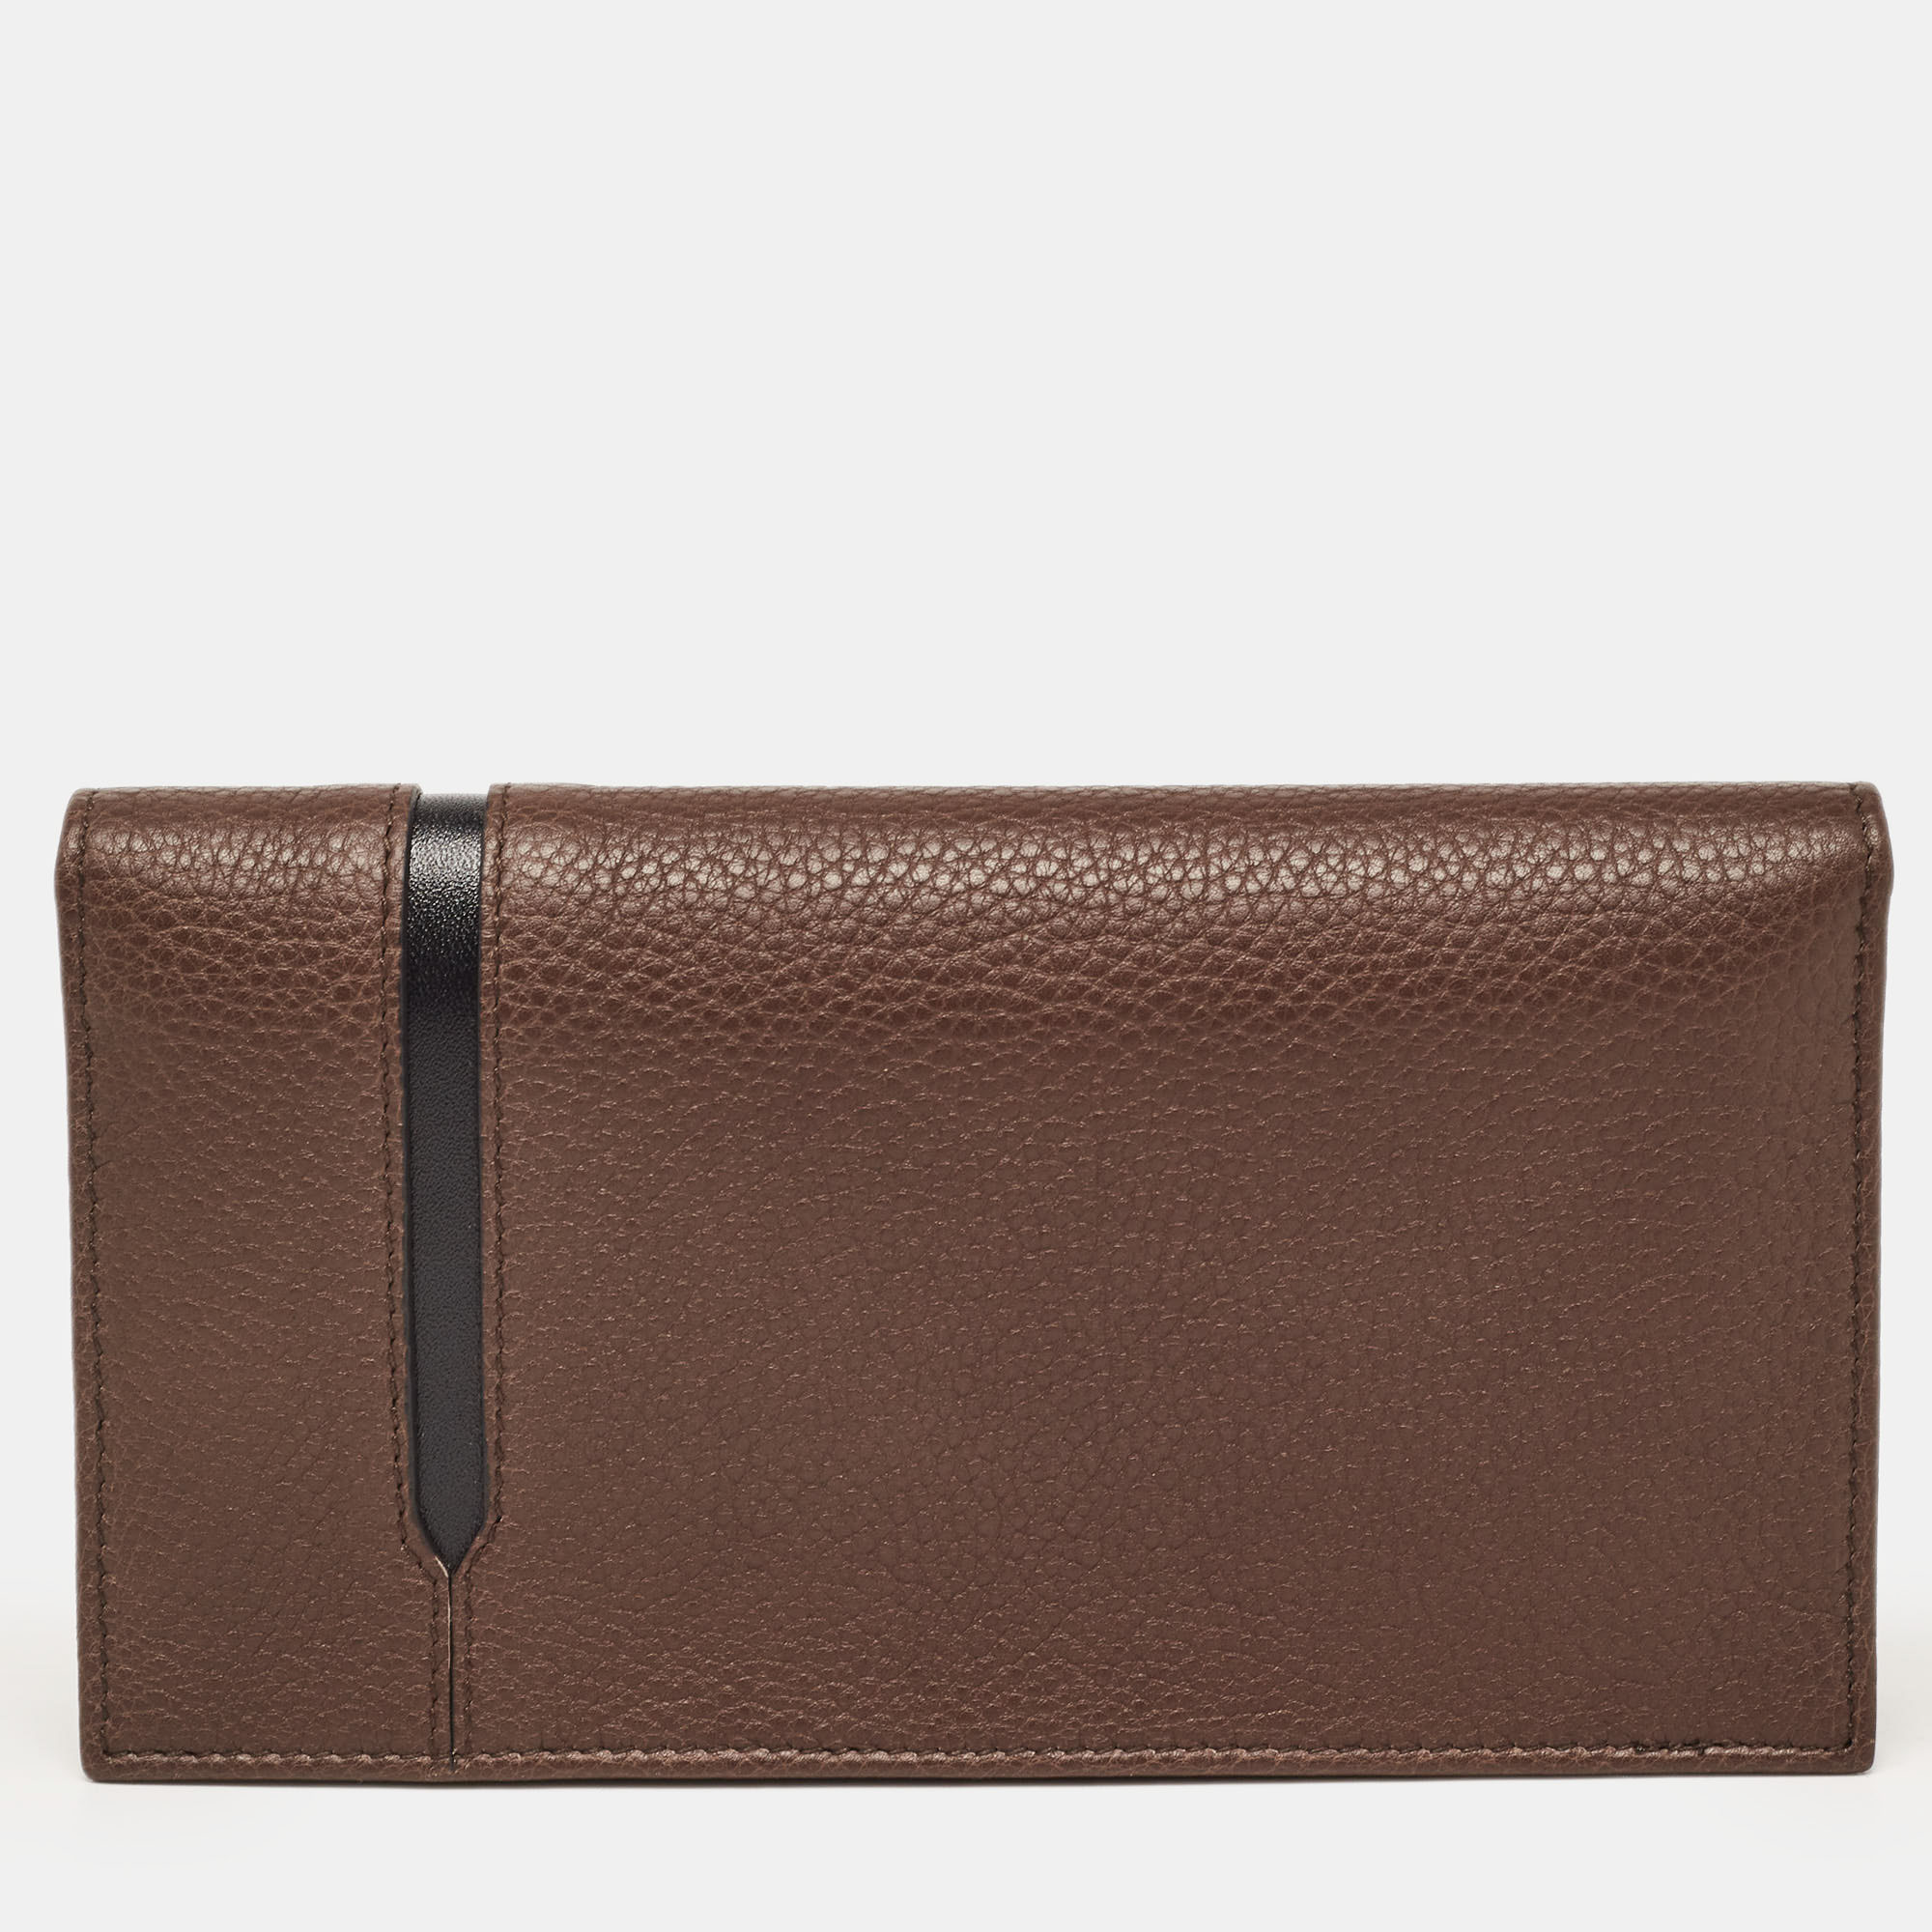 Bvlgari Choco Brown/Black Leather Bifold Long Wallet